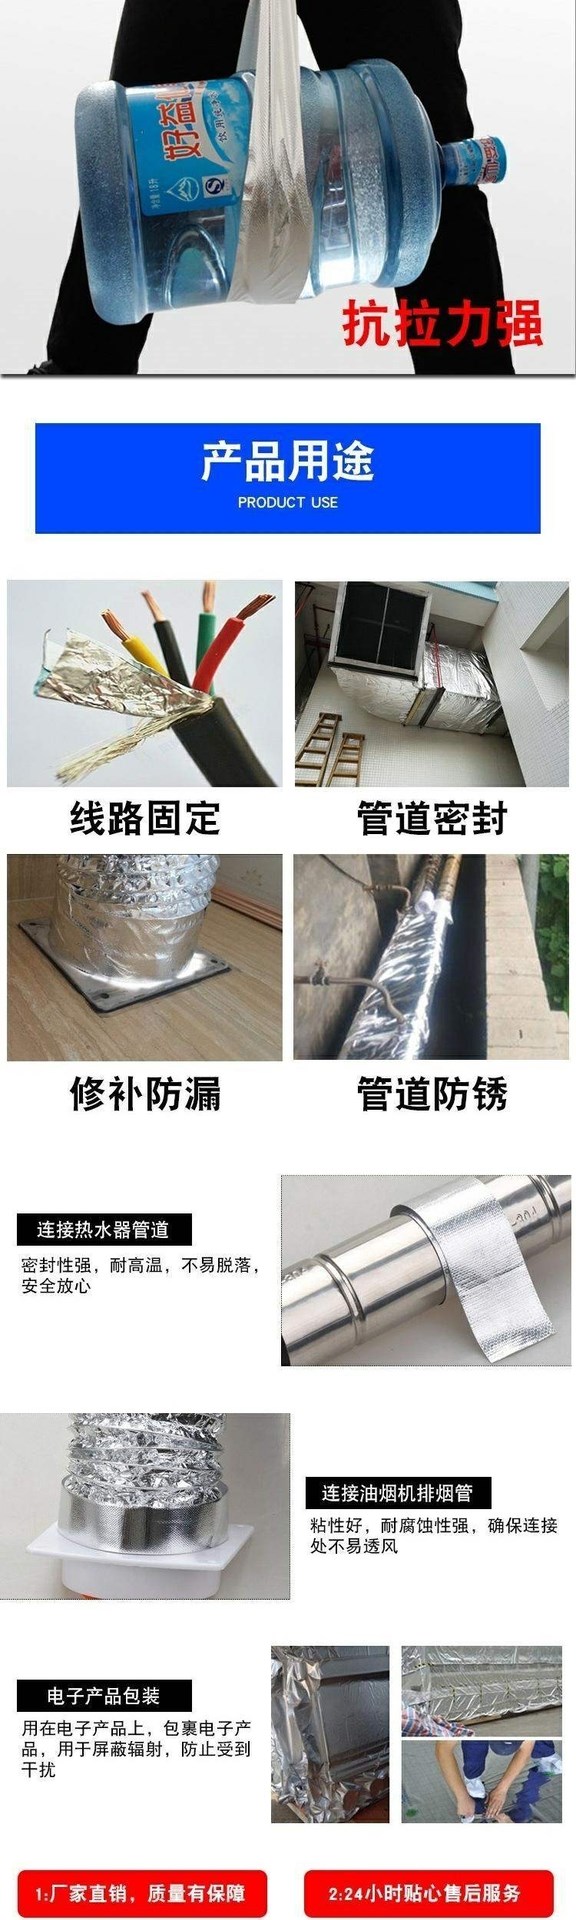 Ghép băng bếp gas Băng giấy thiếc bọc ống nước Chặn ống nước Chặn thực tế 20m Mặt bàn bếp bằng lá nhôm hun khói - Băng keo